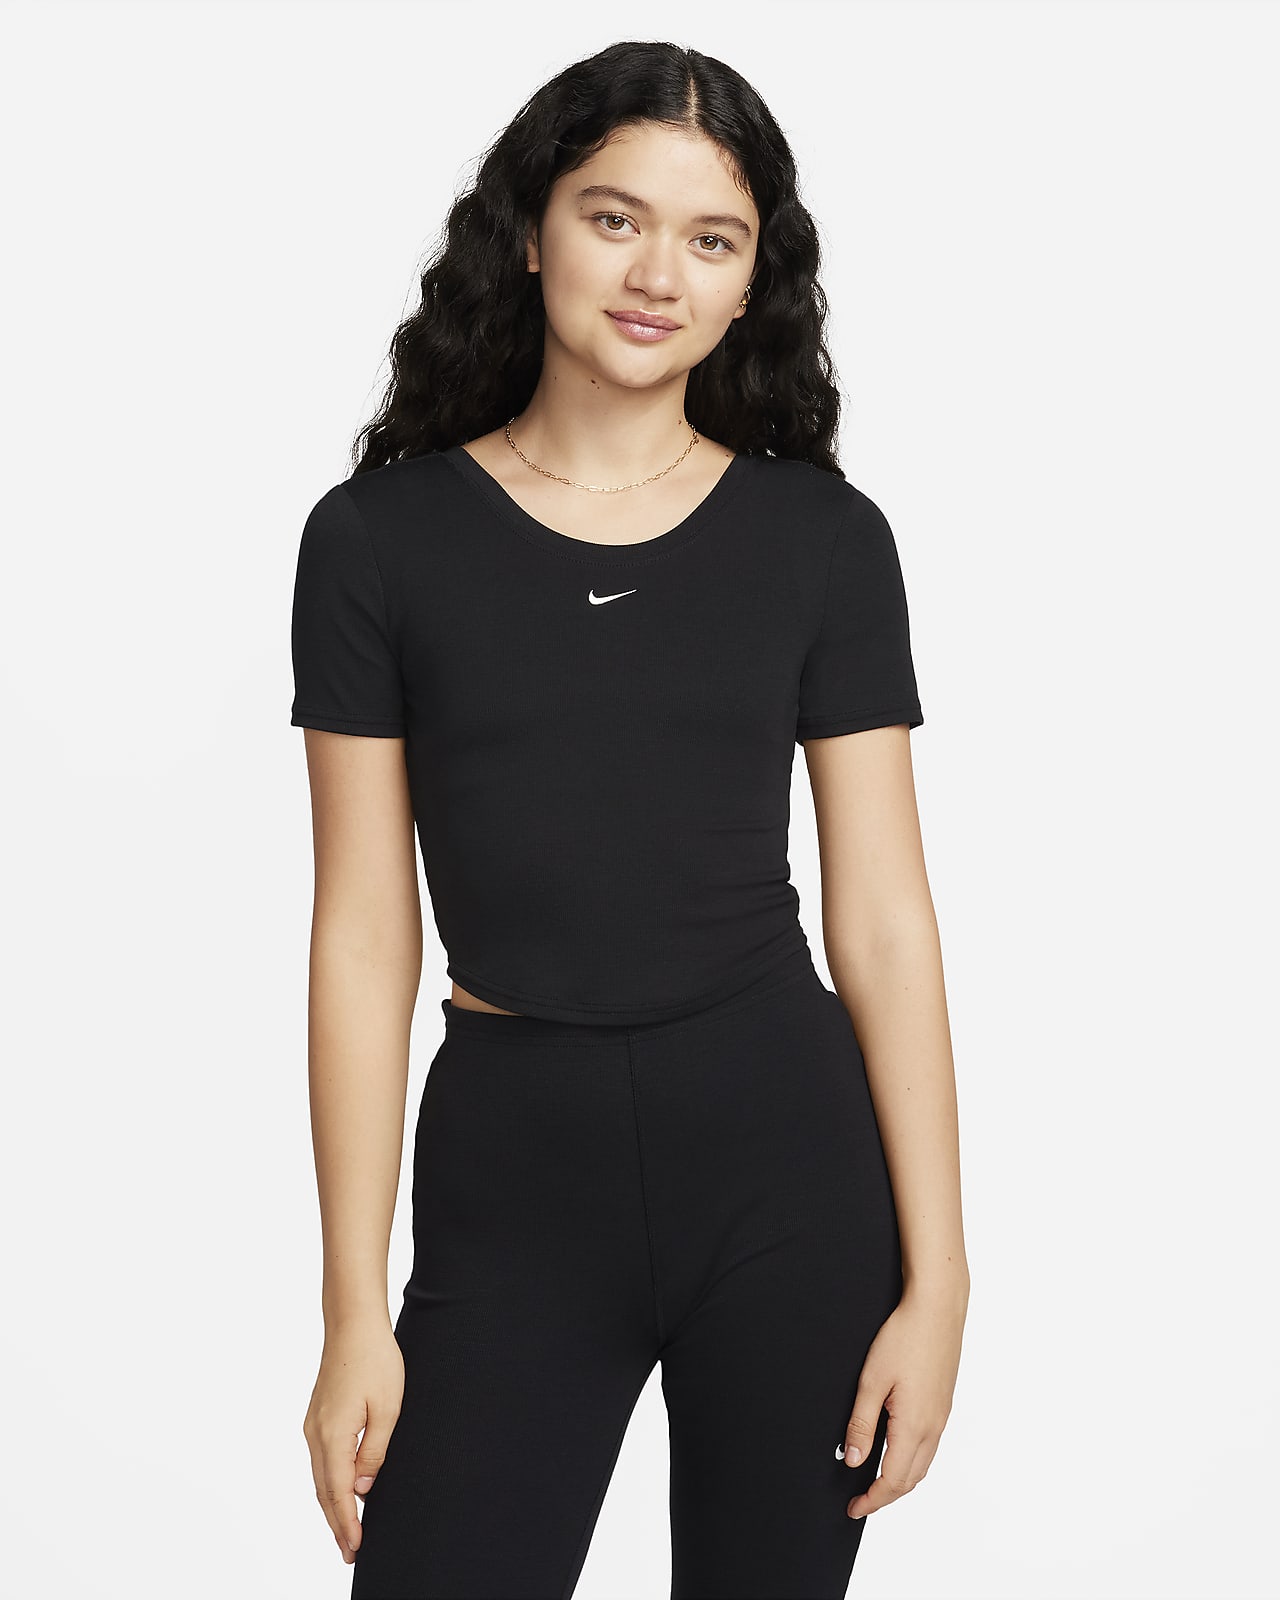 Γυναικεία κοντομάνικη μπλούζα σε εφαρμοστή γραμμή με διακριτική ριμπ ύφανση και βαθύ στρογγυλό άνοιγμα πίσω Nike Sportswear Chill Knit